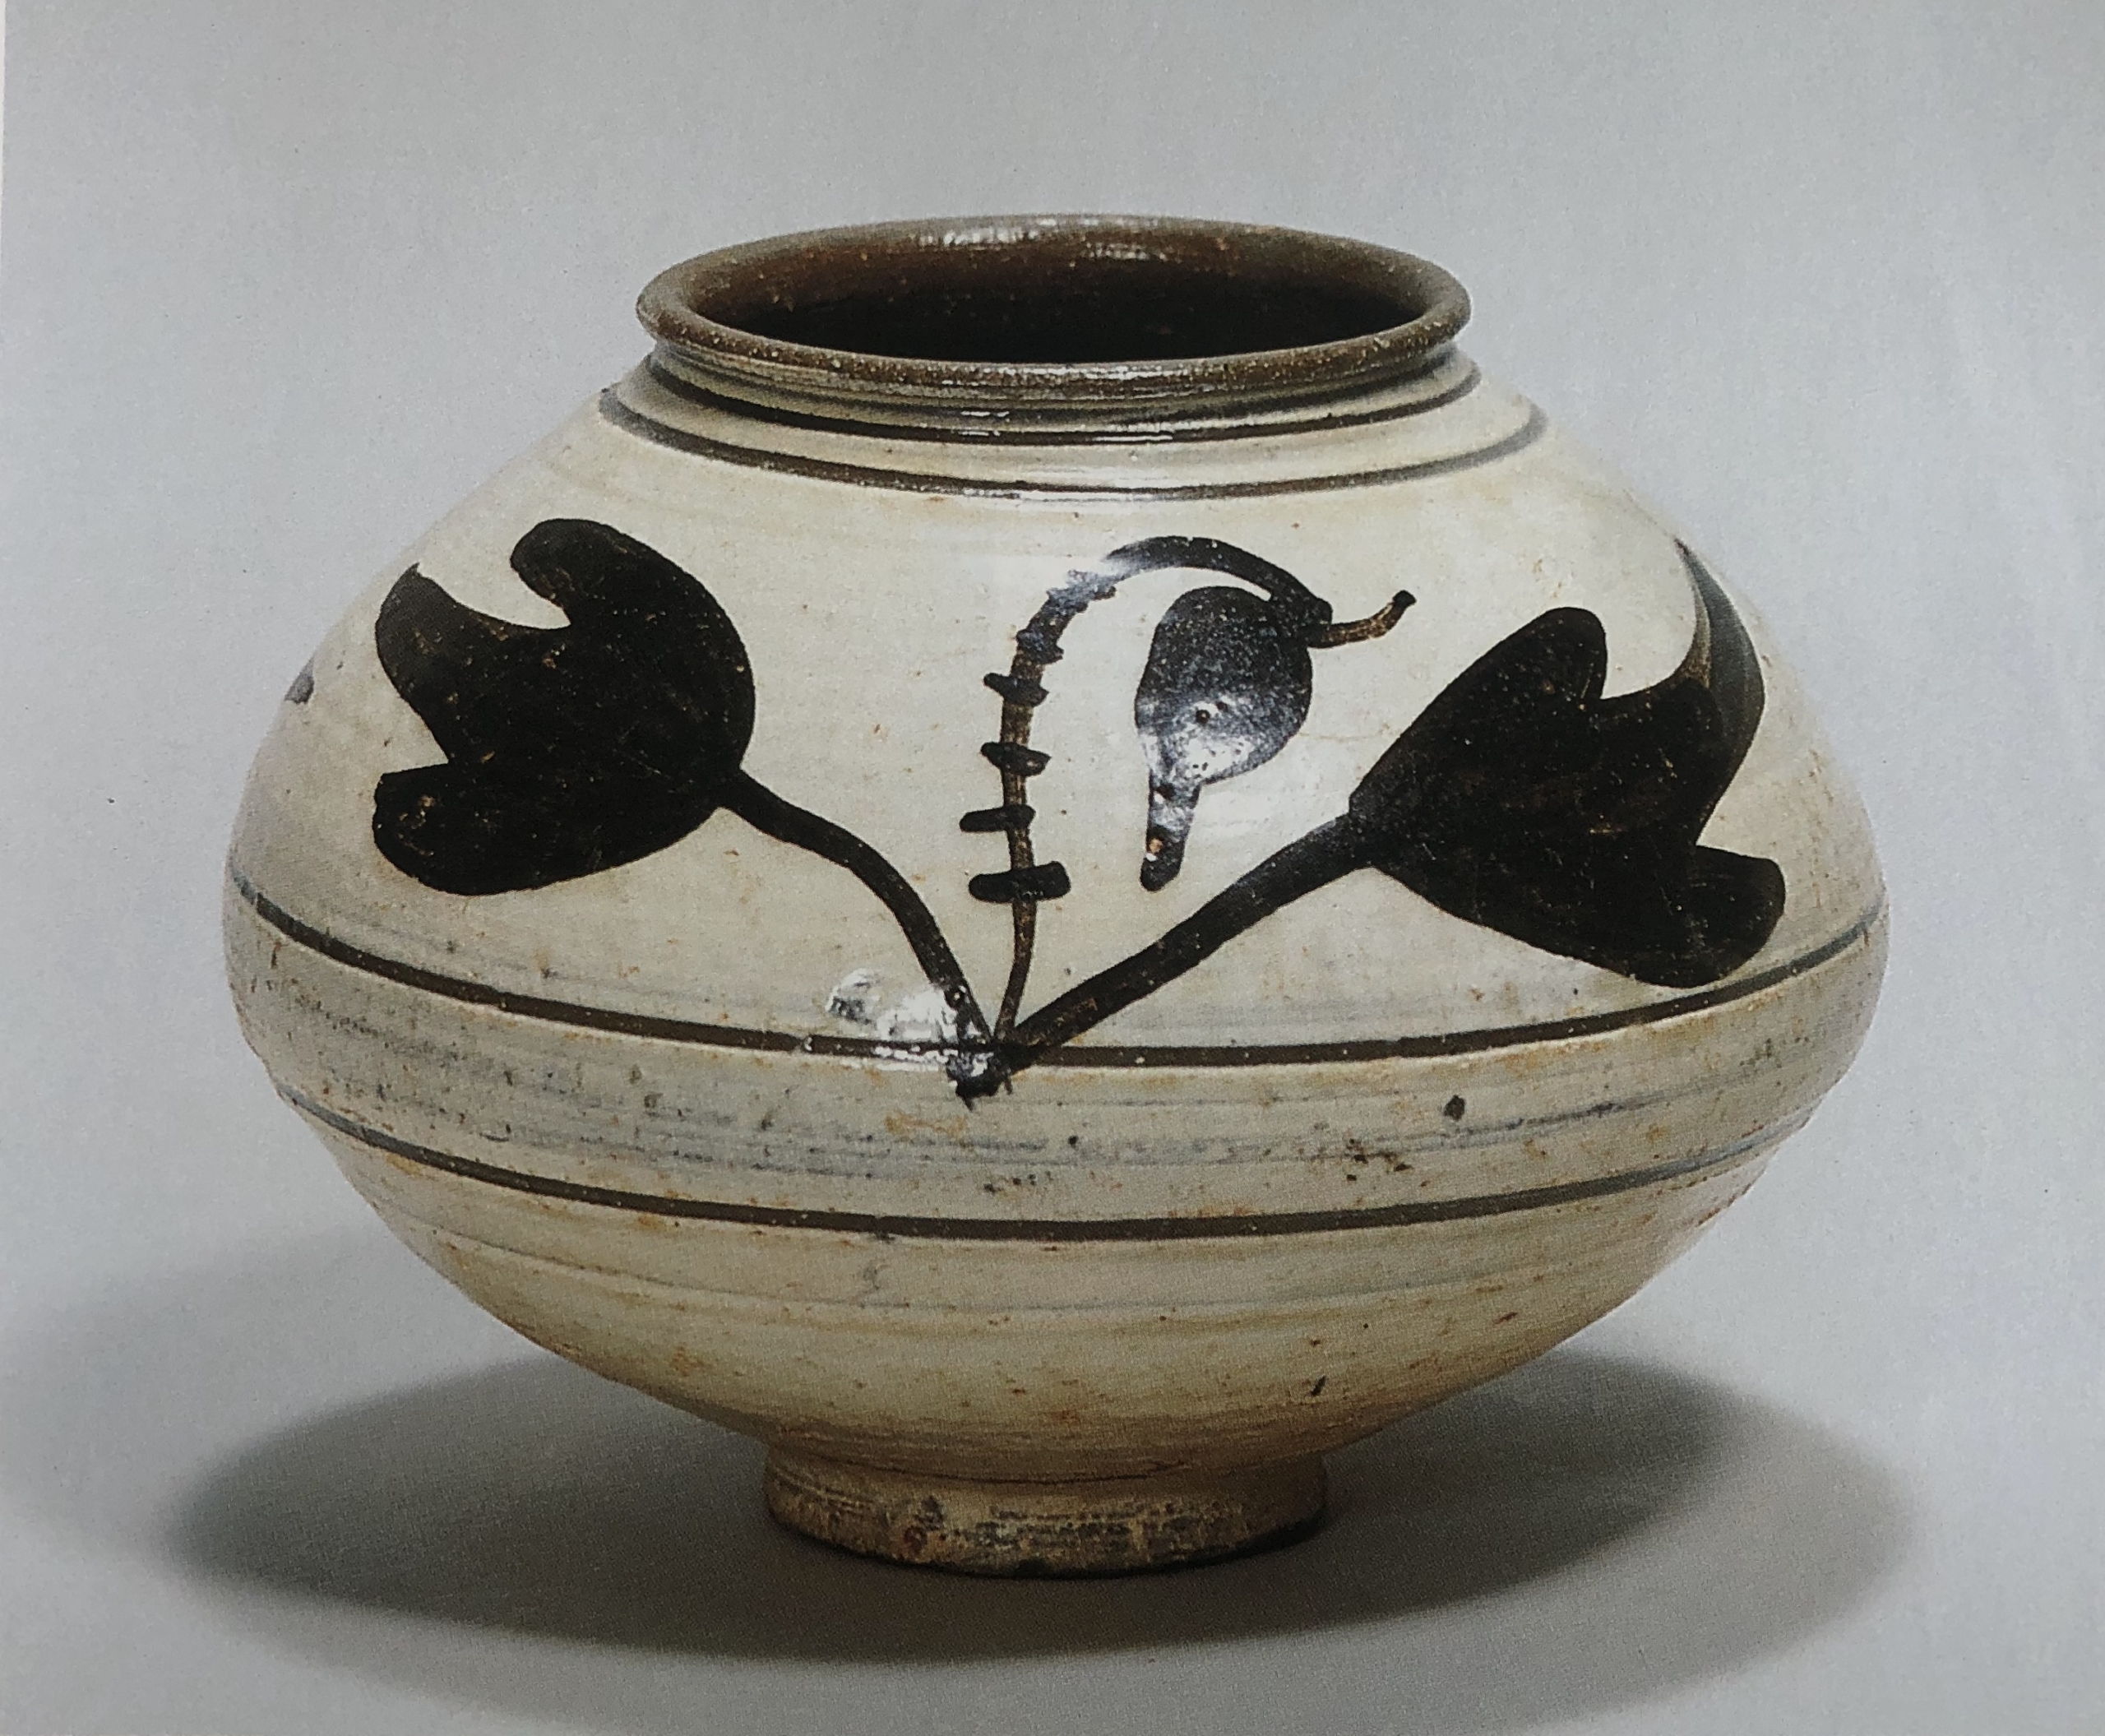 【本物保証人気】古美術 朝鮮古陶磁器 高麗青磁 茶碗 古作 時代物 極上品 初だし品 1337 高麗